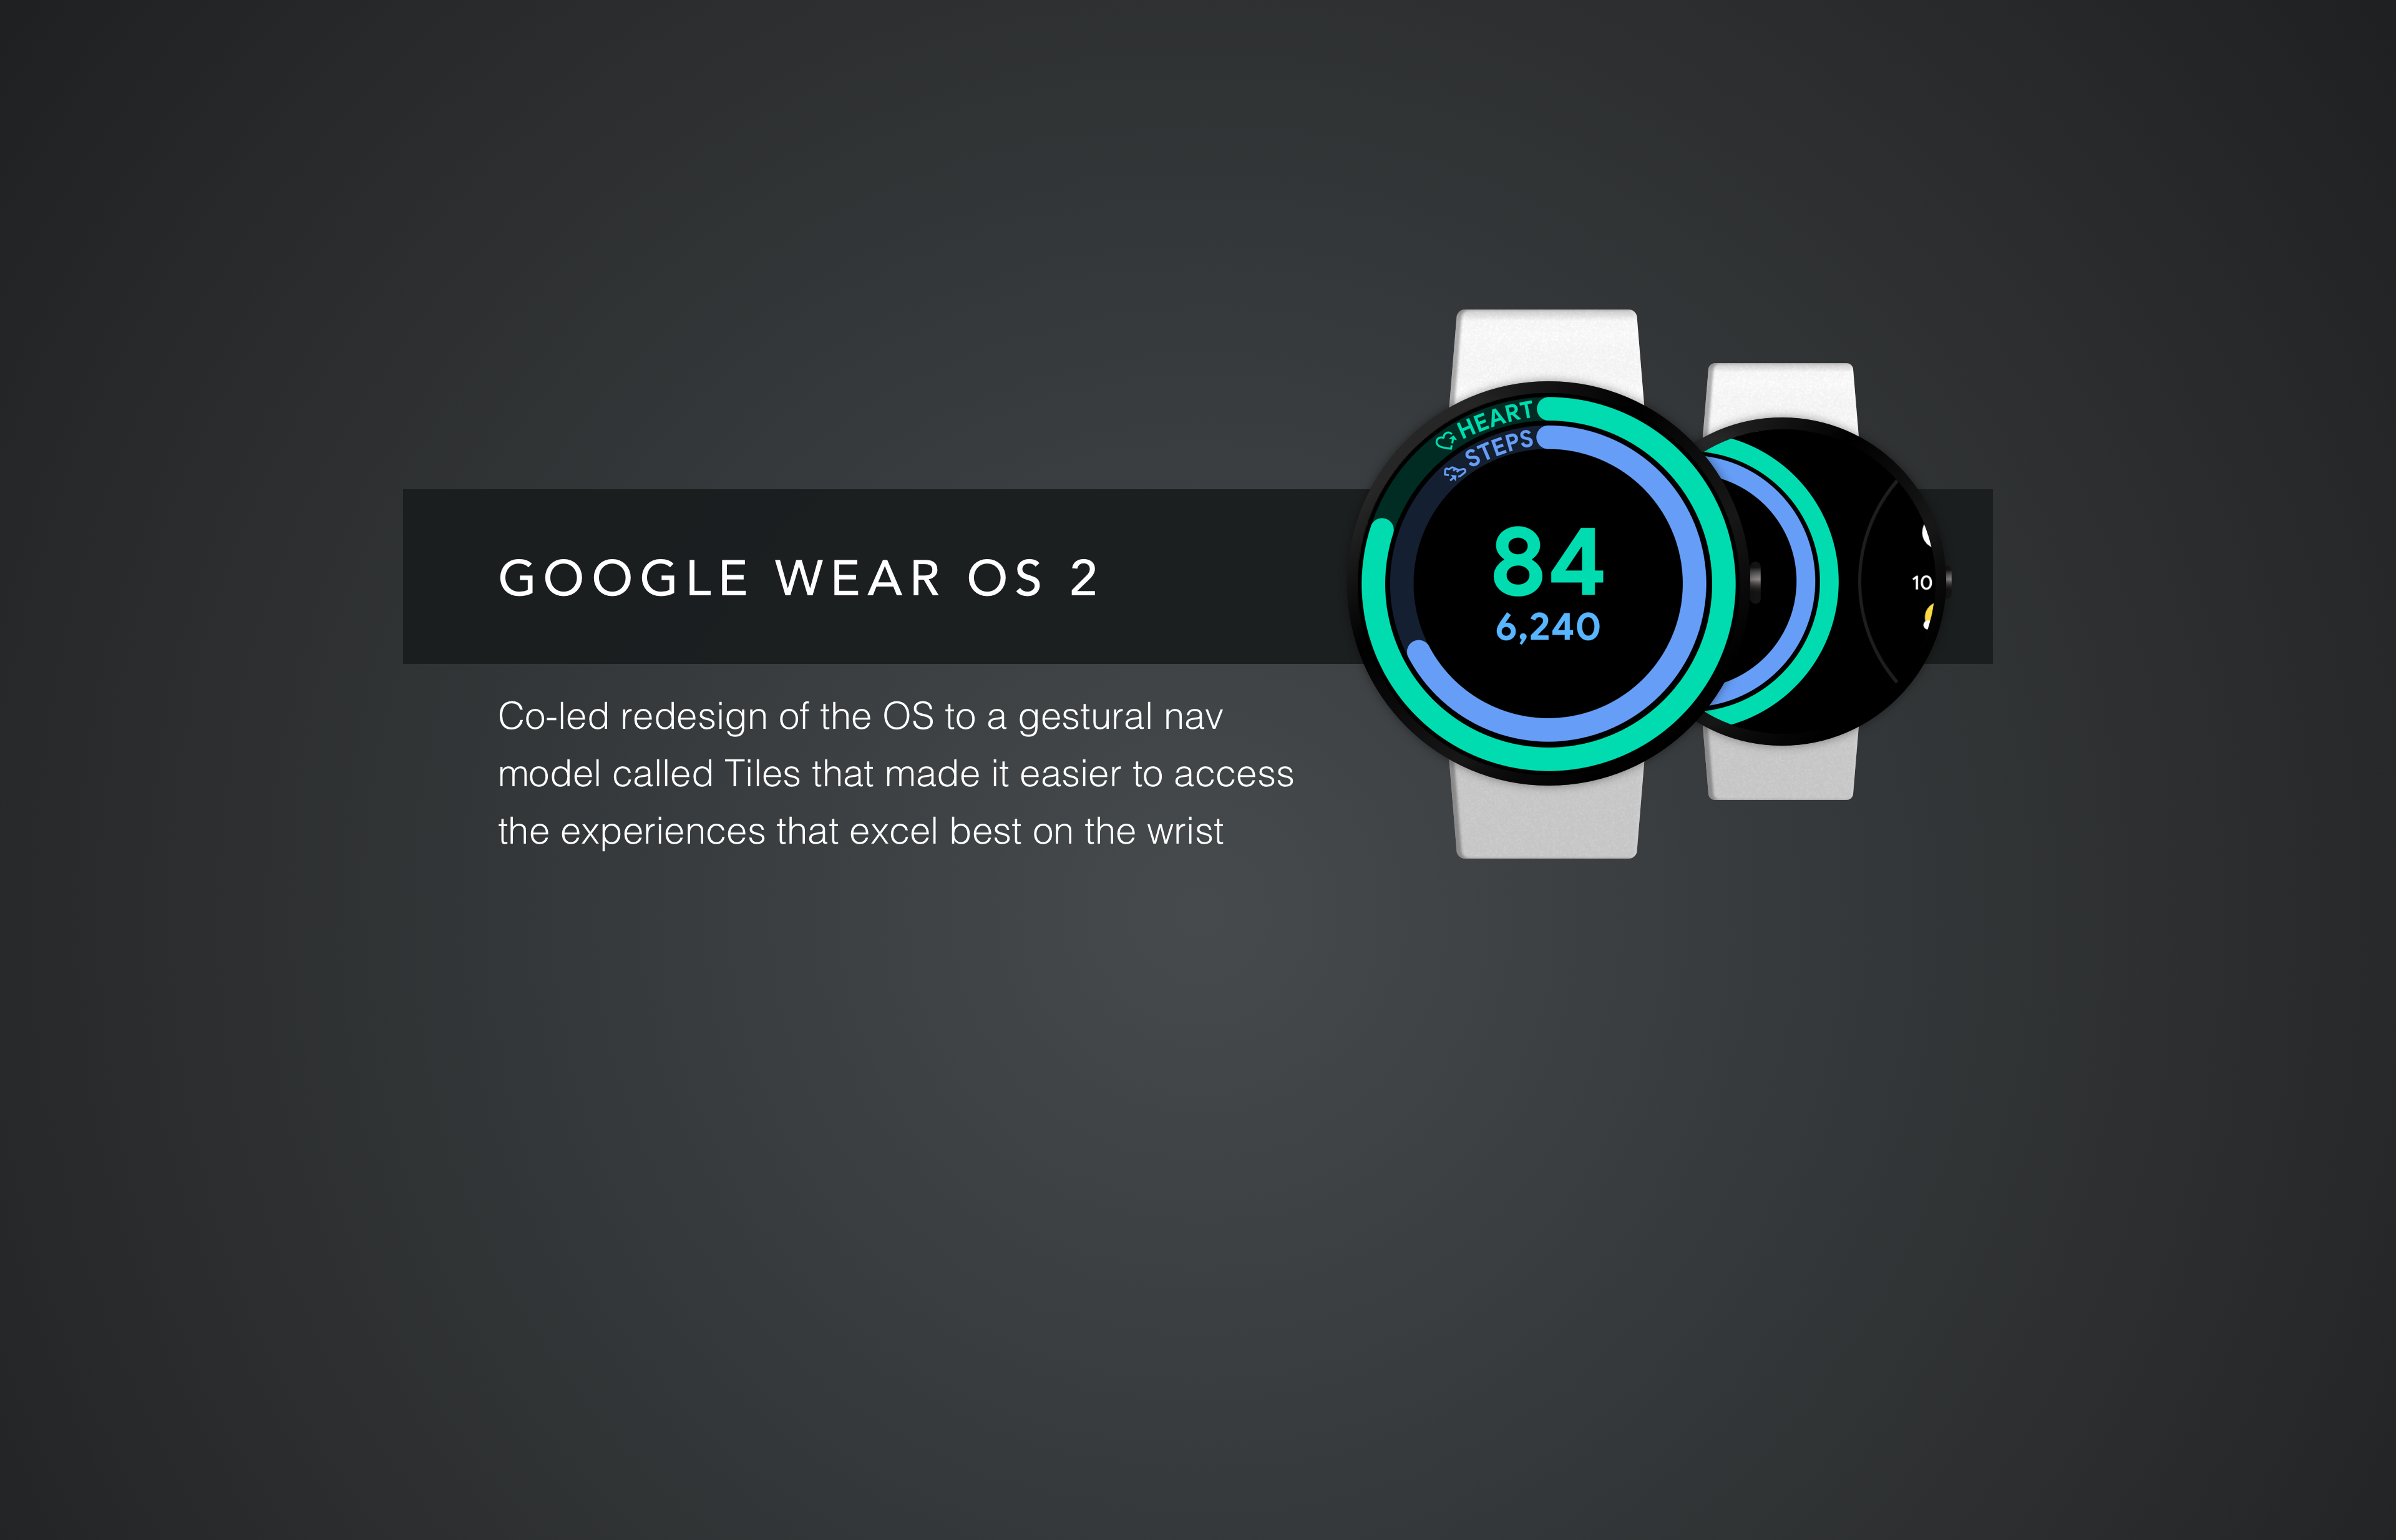 Google Wear OS 2